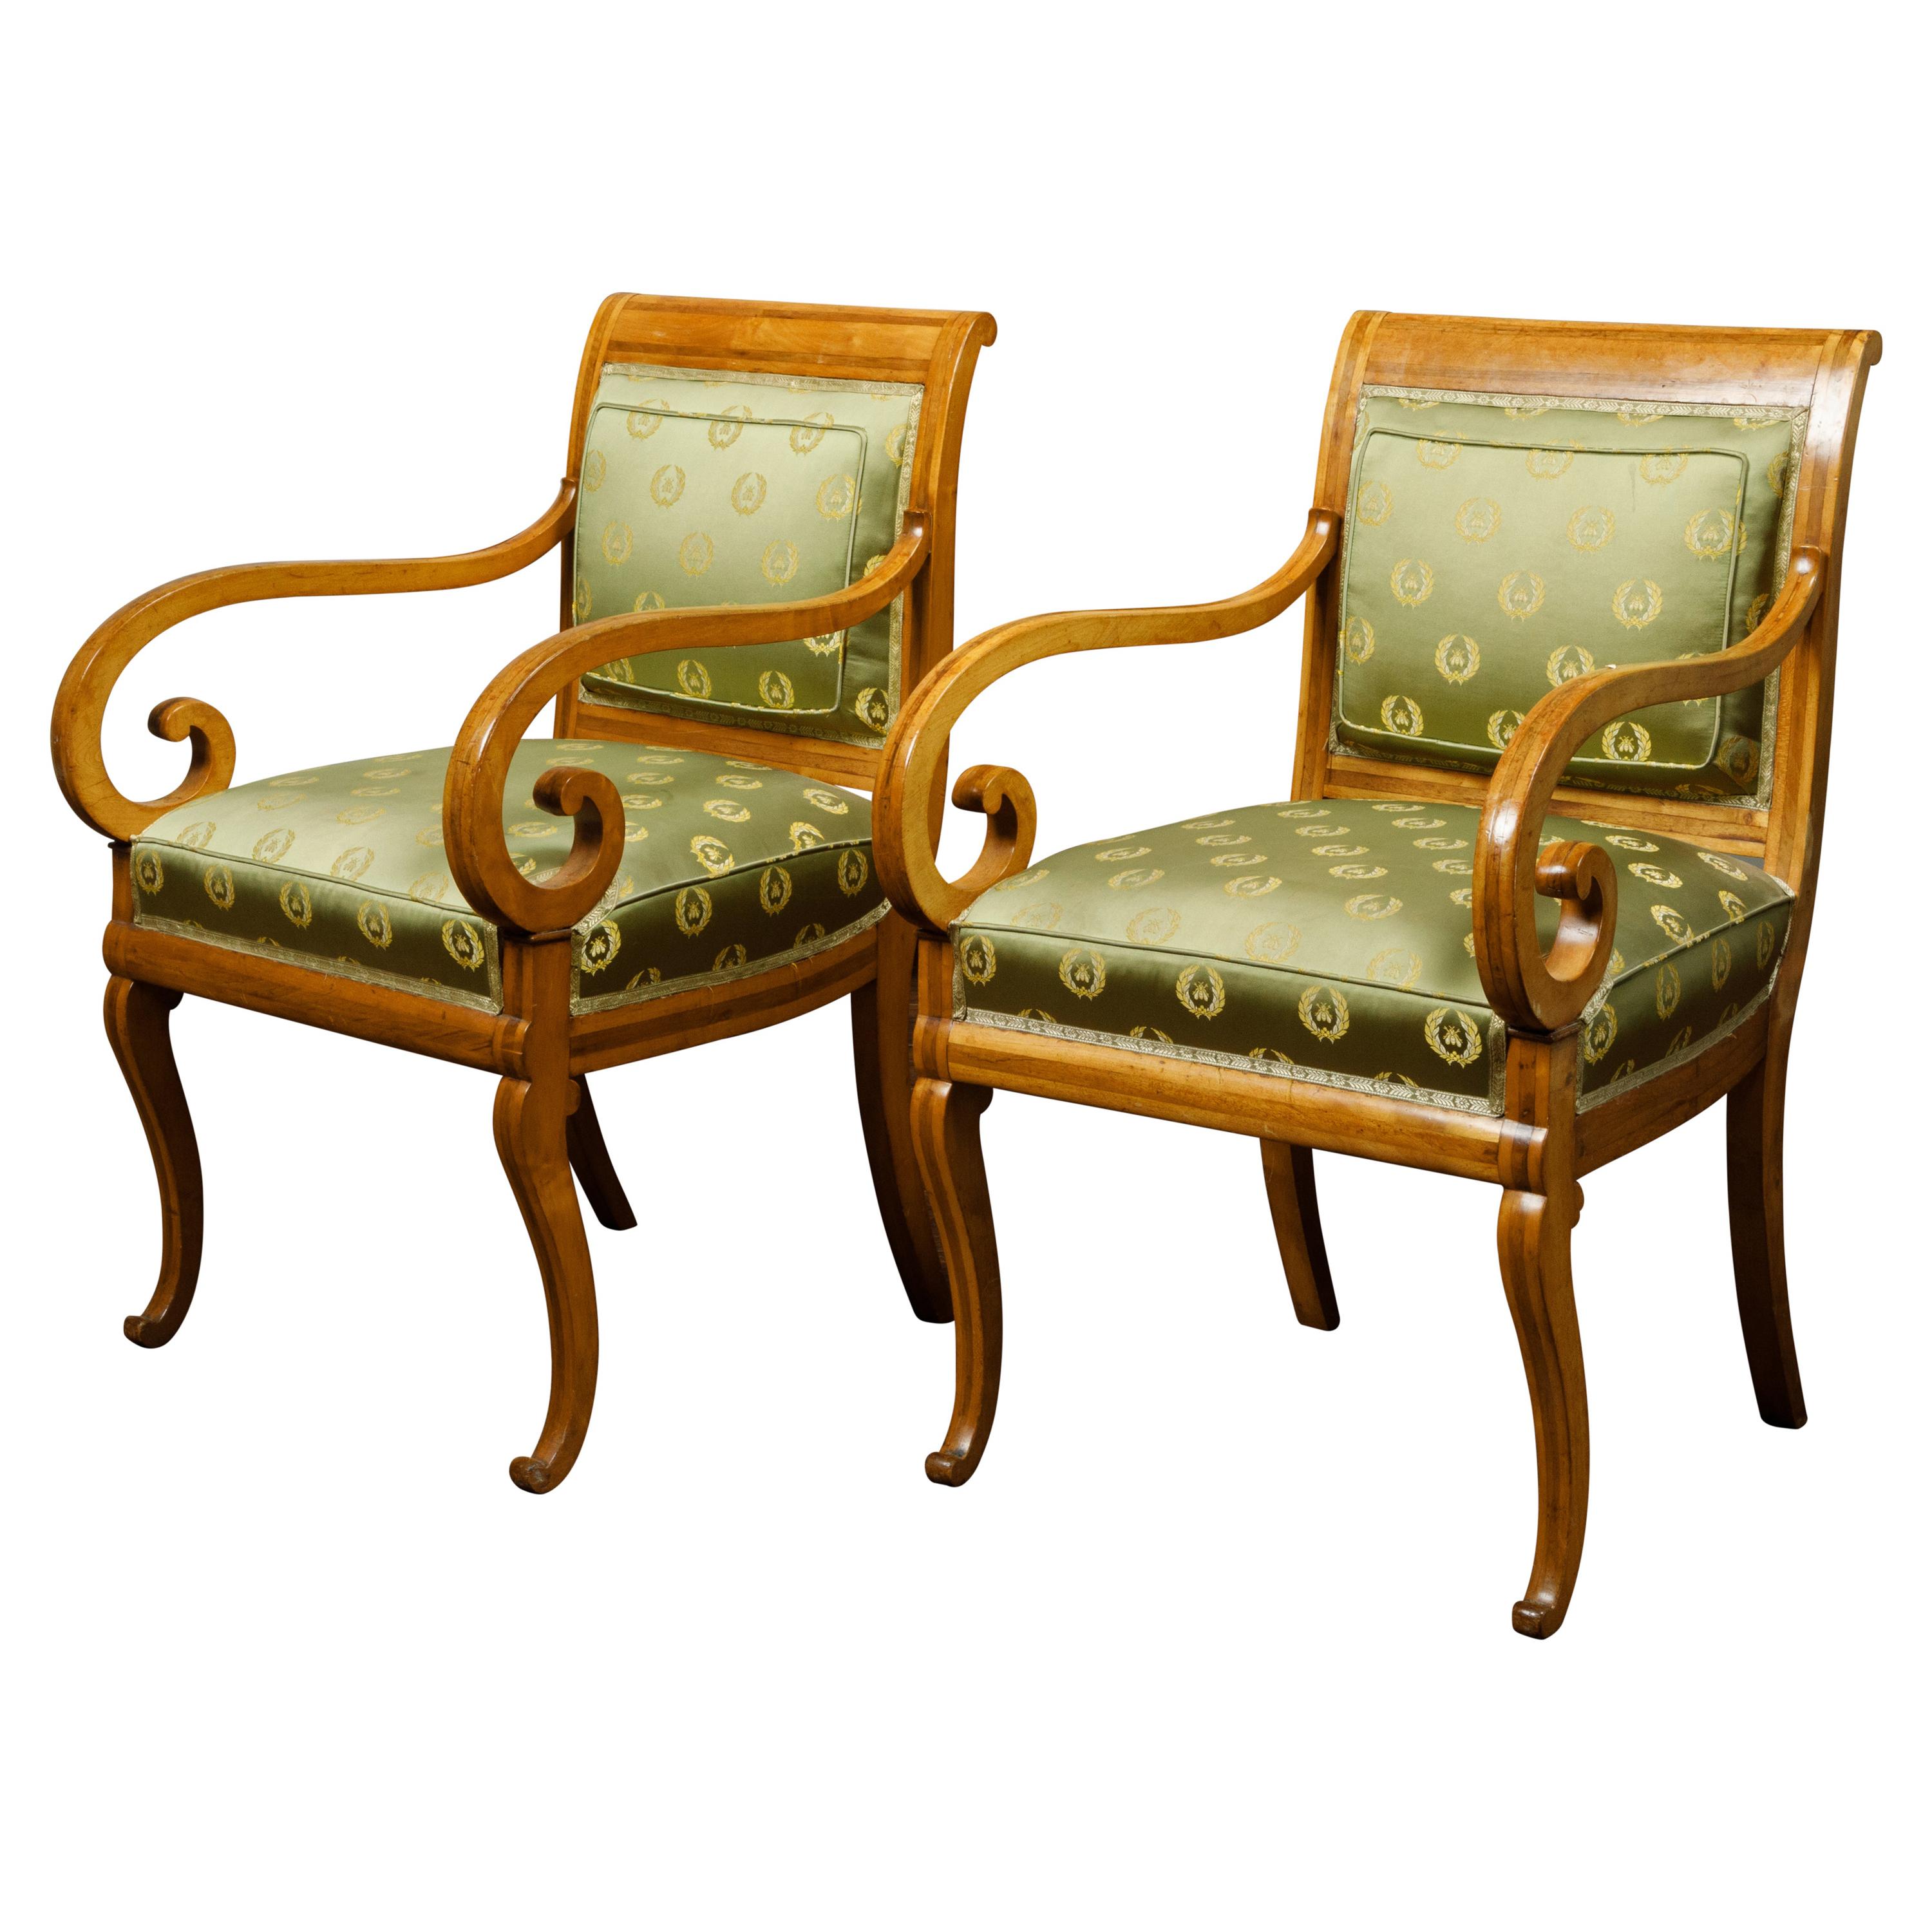 Paire de fauteuils tapissés en noyer avec accoudoirs à enroulement, de style Régence anglaise des années 1830